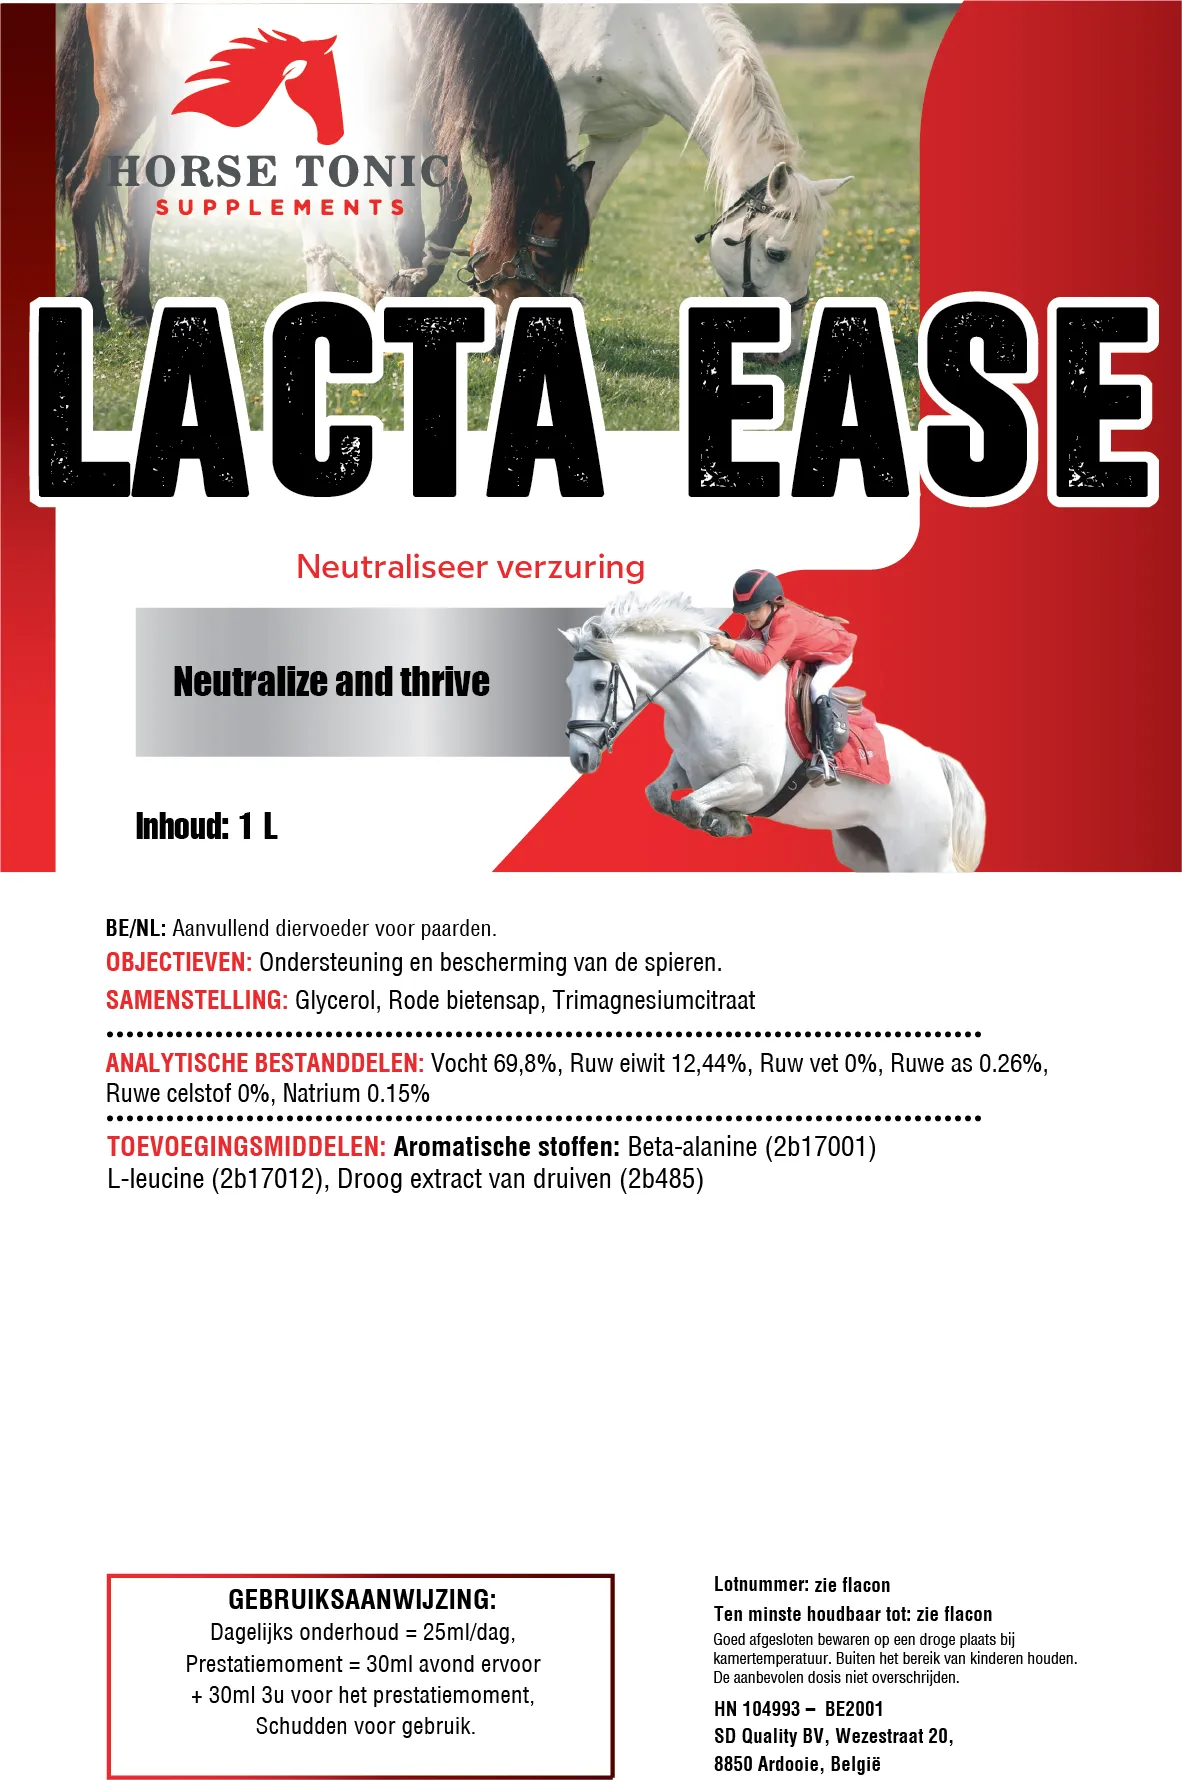 Lacta Ease for horses